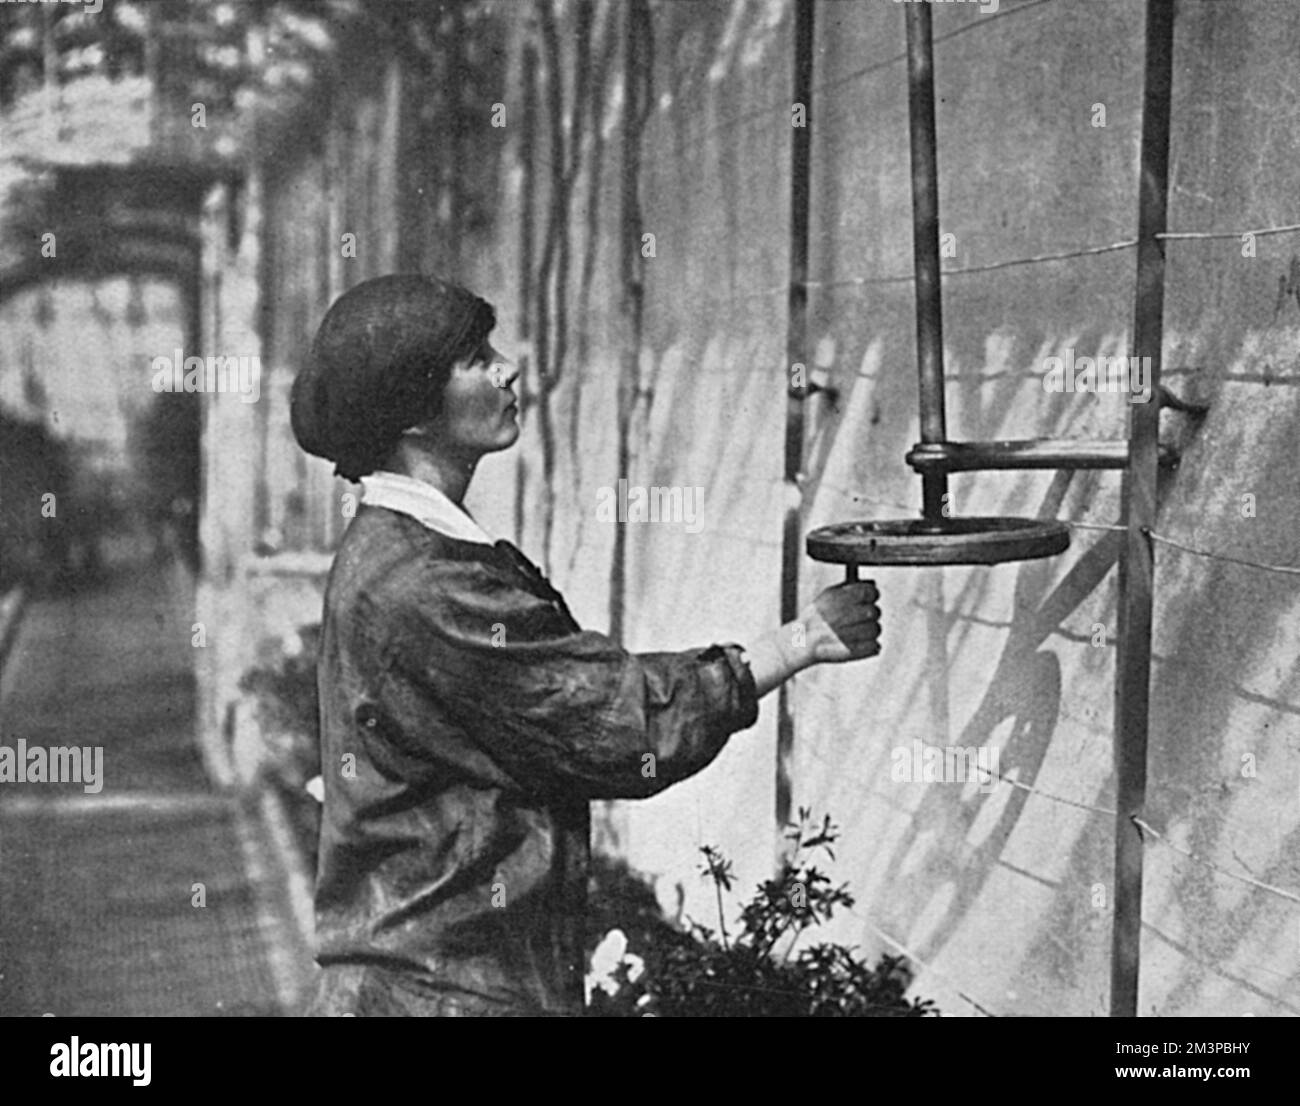 L'une des quatre femmes jardinières employées au château de Windsor pendant la première Guerre mondiale, photographiée ouvrant les lumières dans les maisons en verre. Le magazine Sphere rapporte qu'ils « font tout le travail que les hommes dont ils ont pris les lieux étaient tenus de faire ». Date: 1916 Banque D'Images